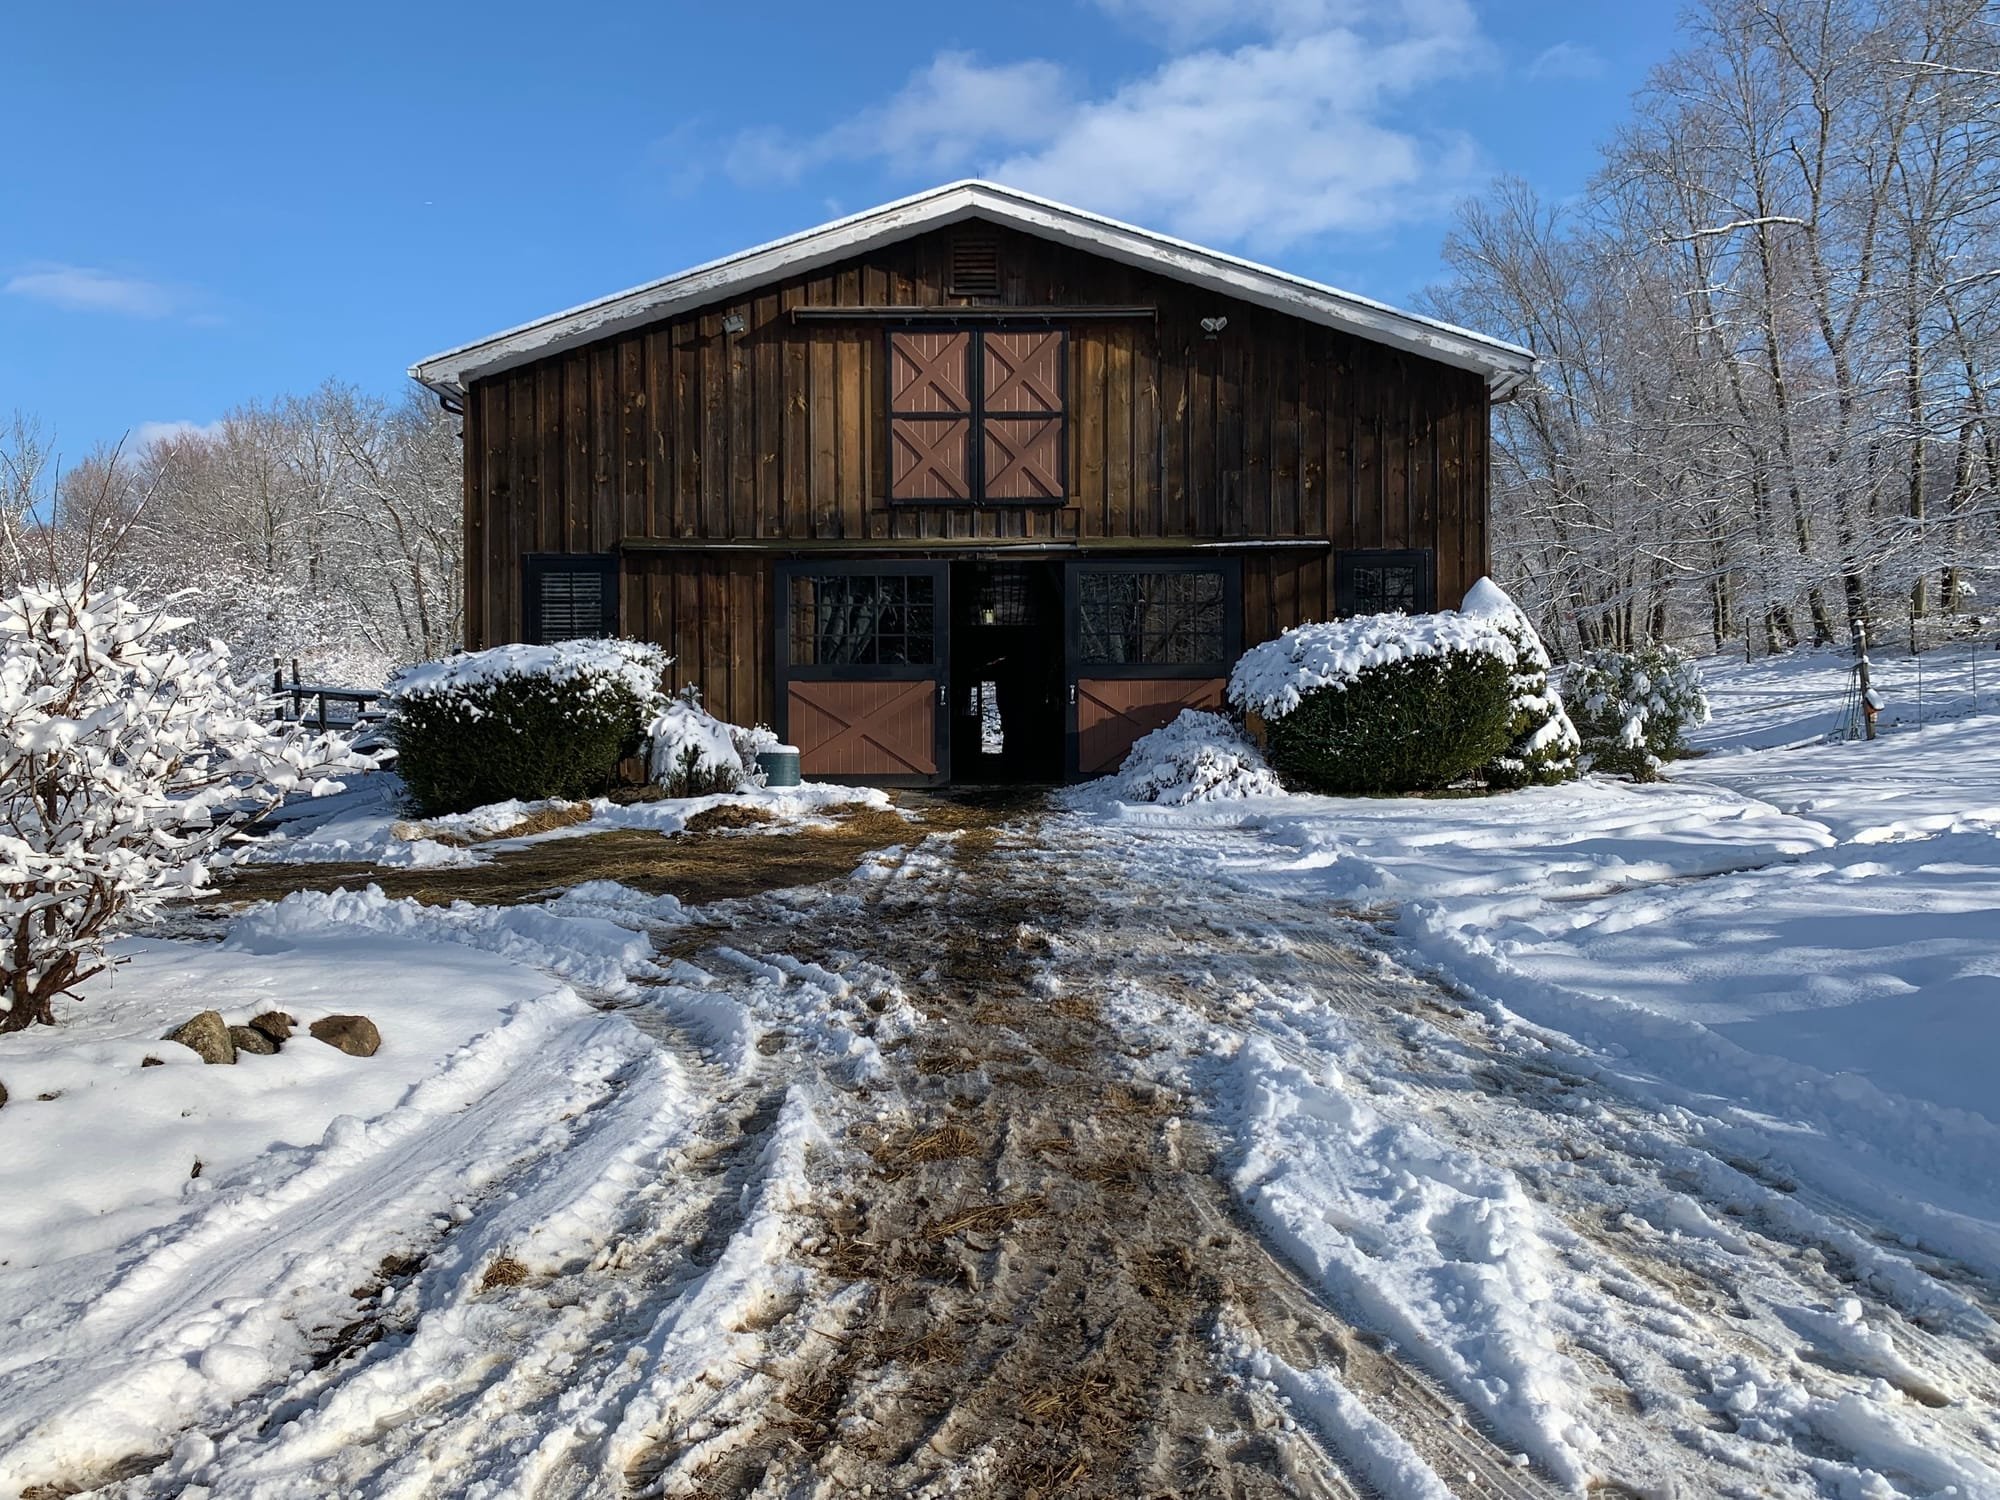 Winter at the barn